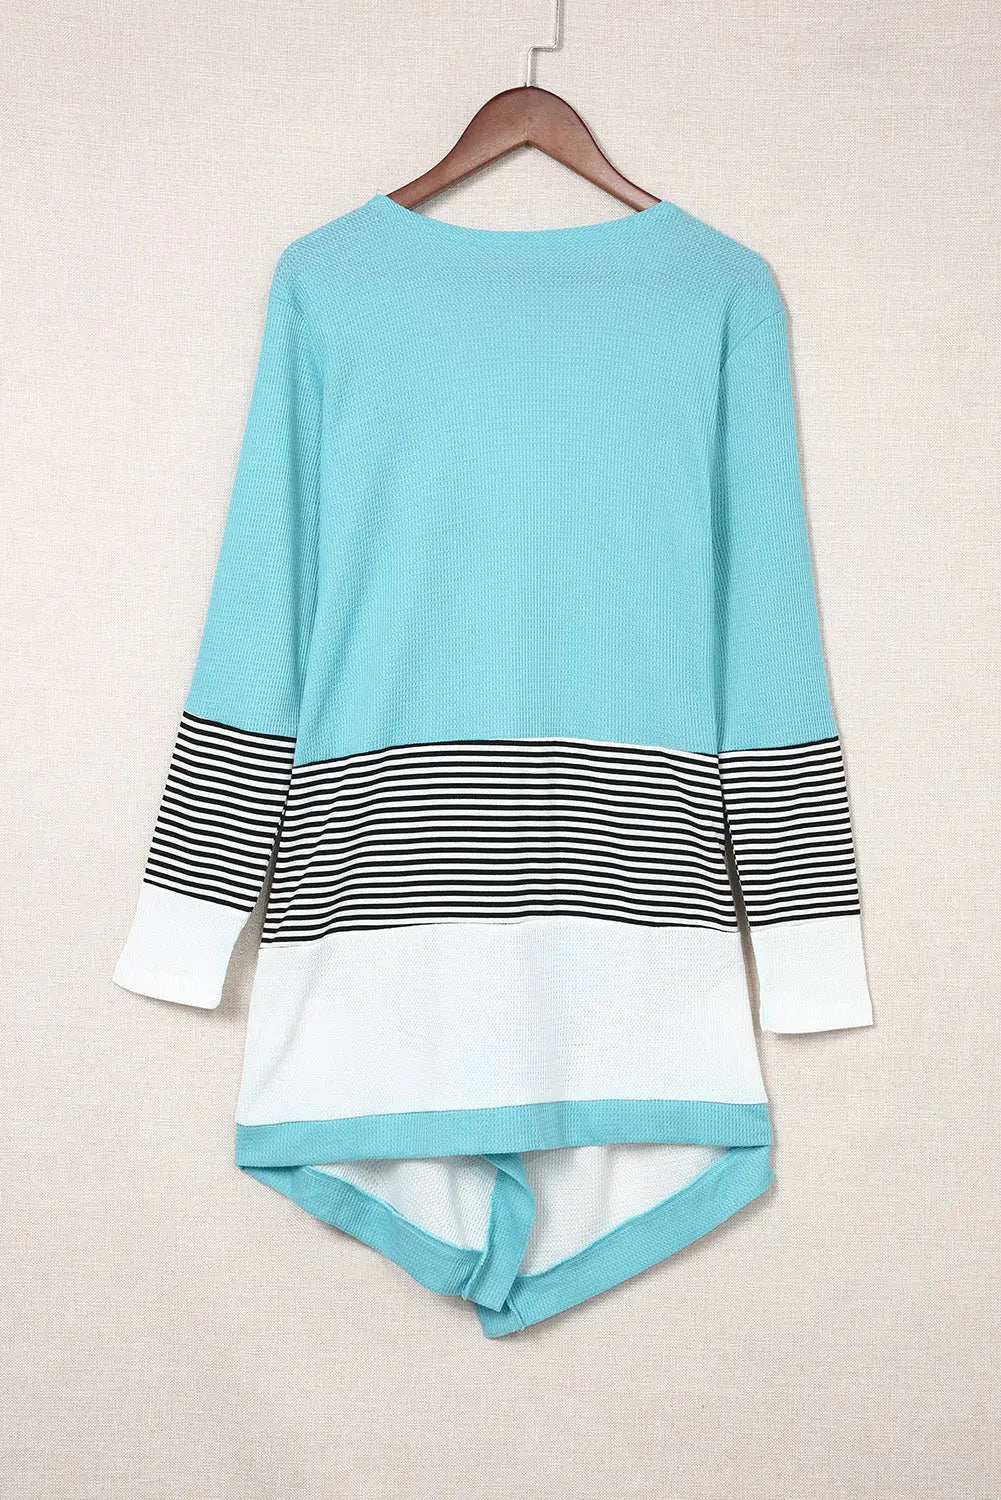 Sky blue loose fit stripe colorblock cardigan - sweaters & cardigans